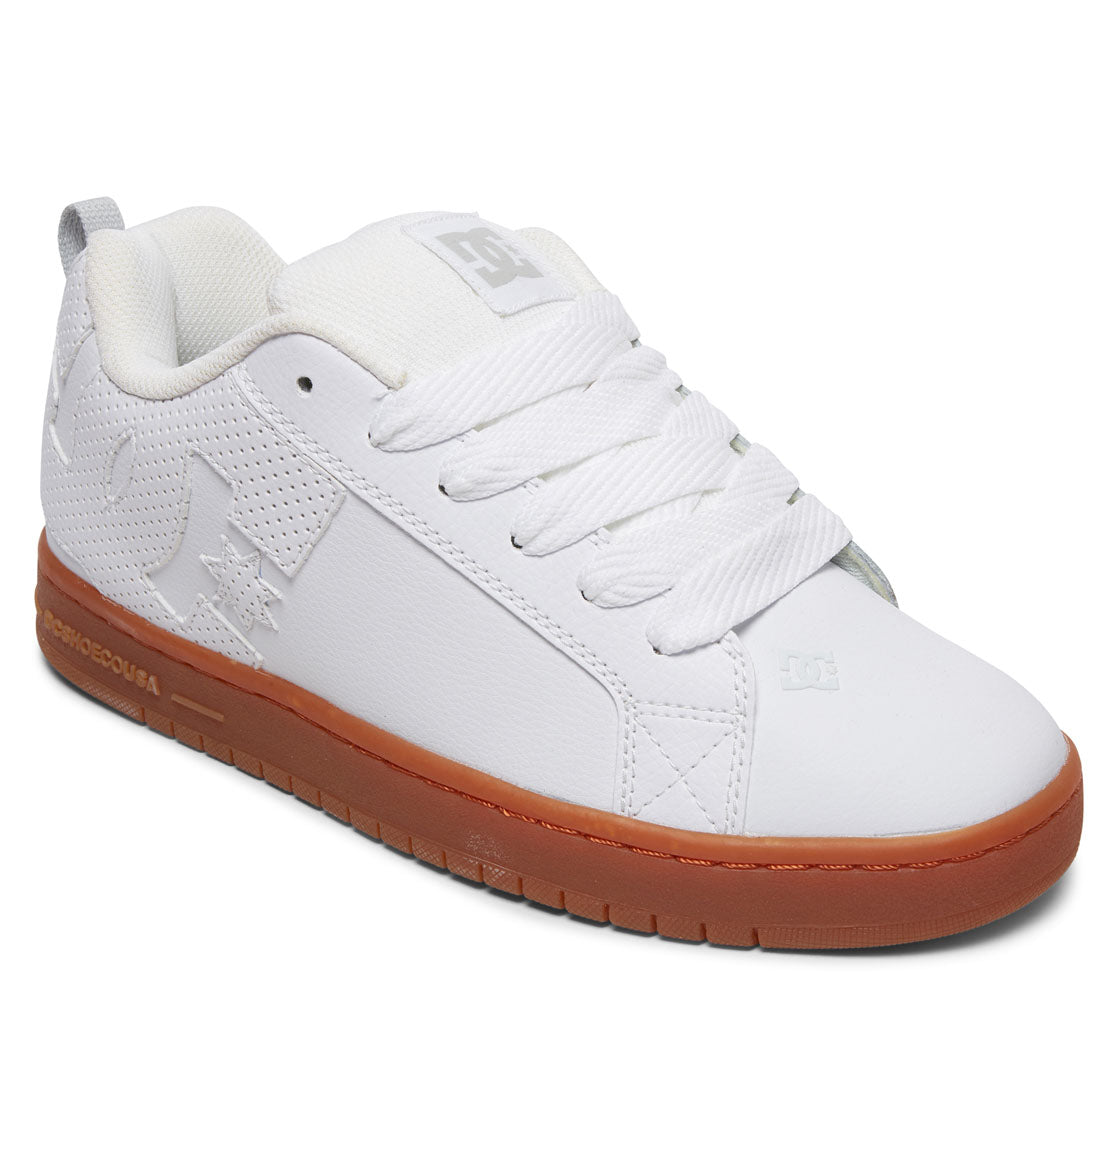 Men's Court Graffik Shoes - White